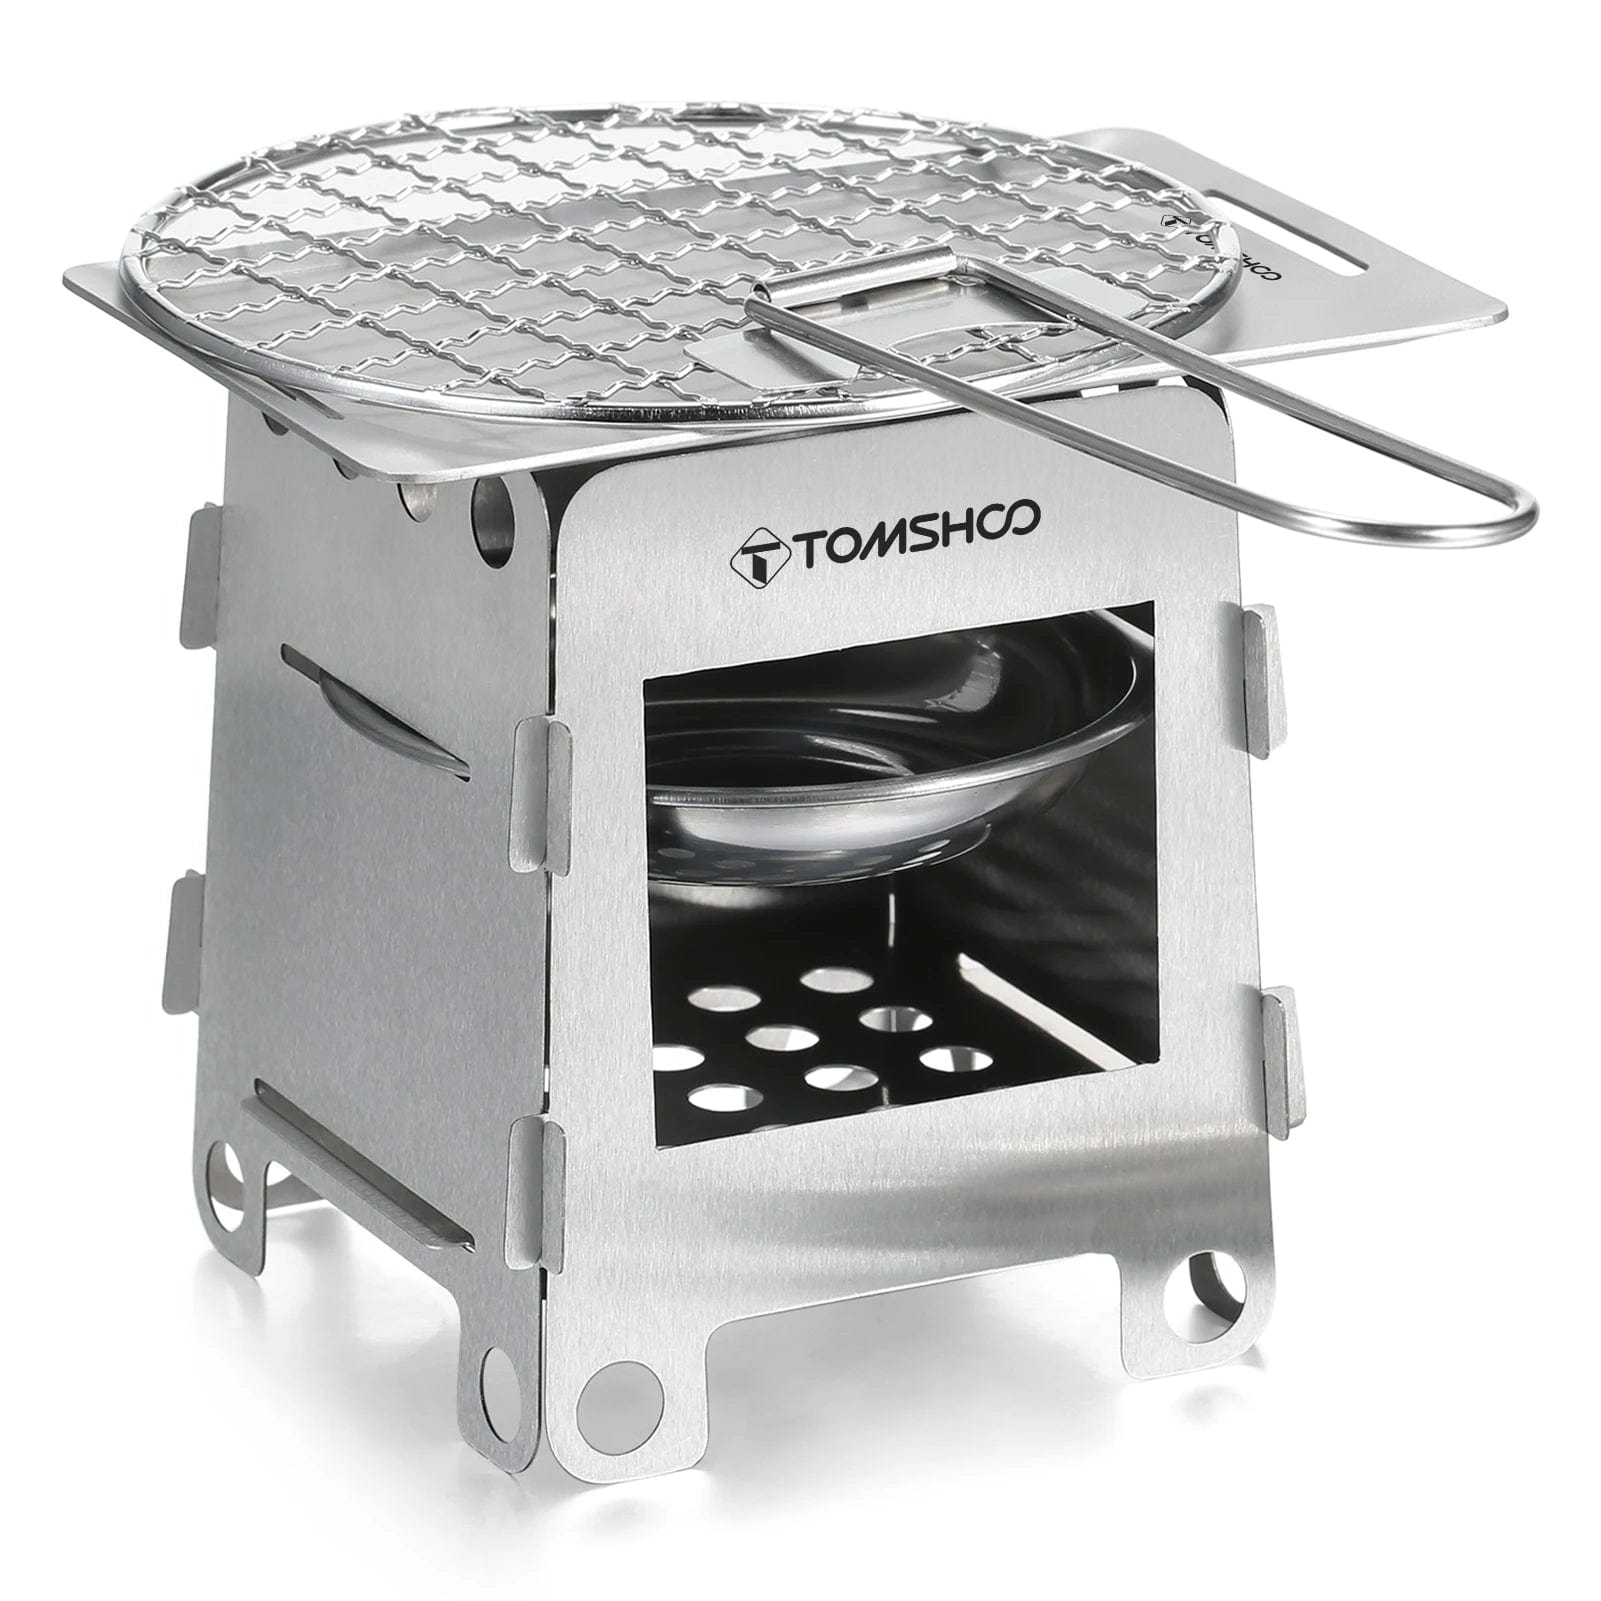 Tomshoo cuisinière pliante en acier inoxydable/grill extérieur